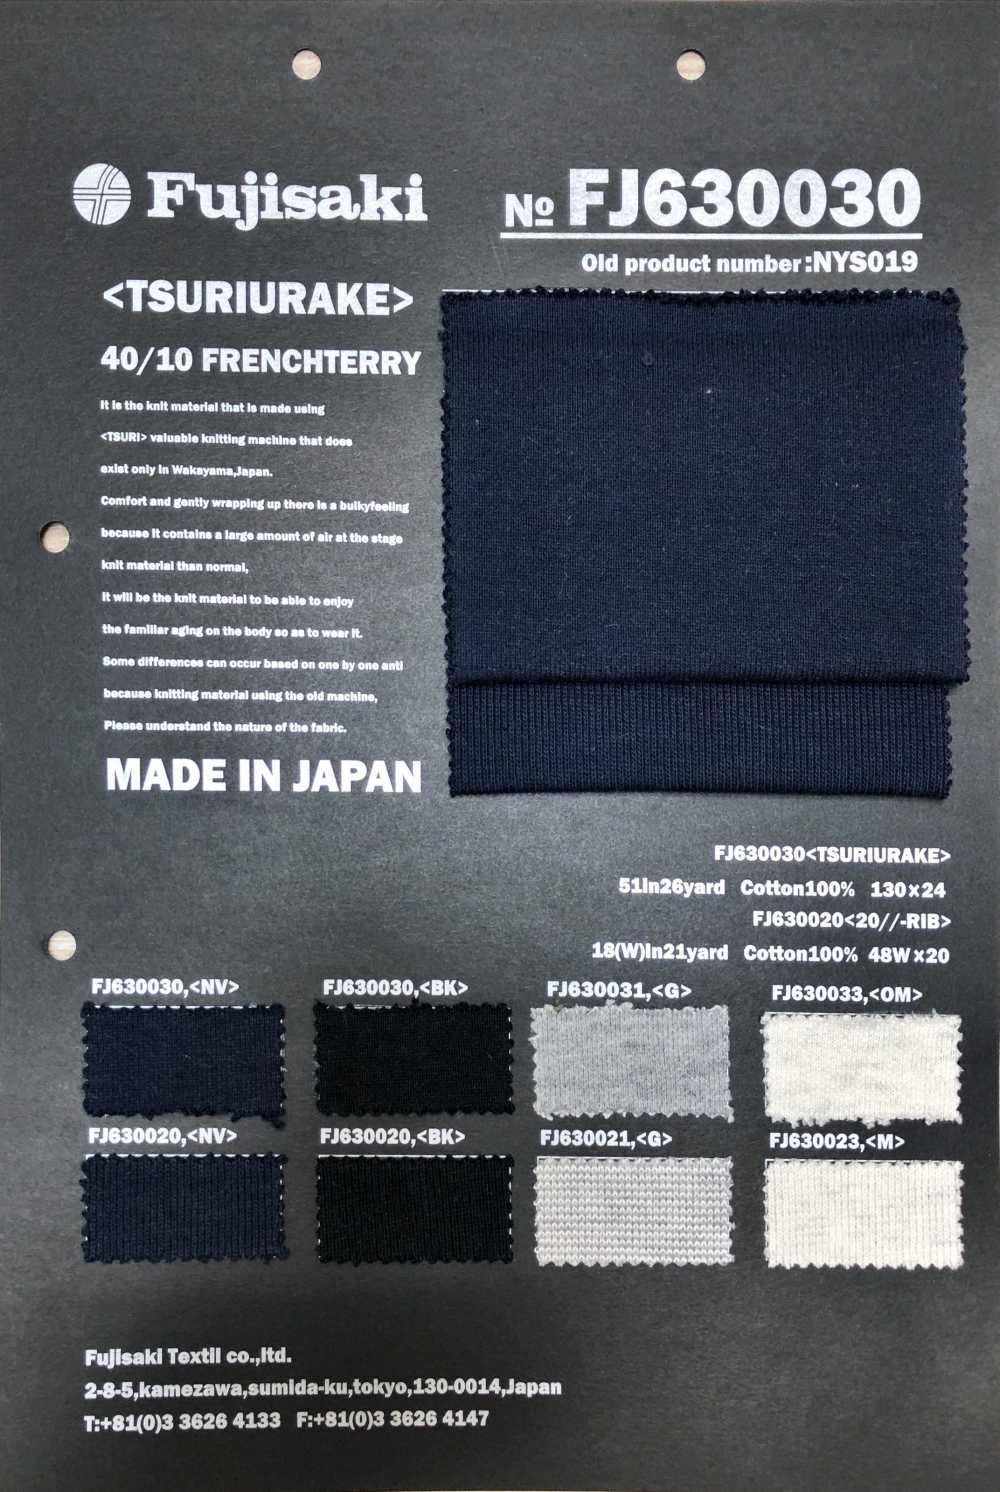 FJ630030 毛圈布和缝制面料 Fujisaki Textile